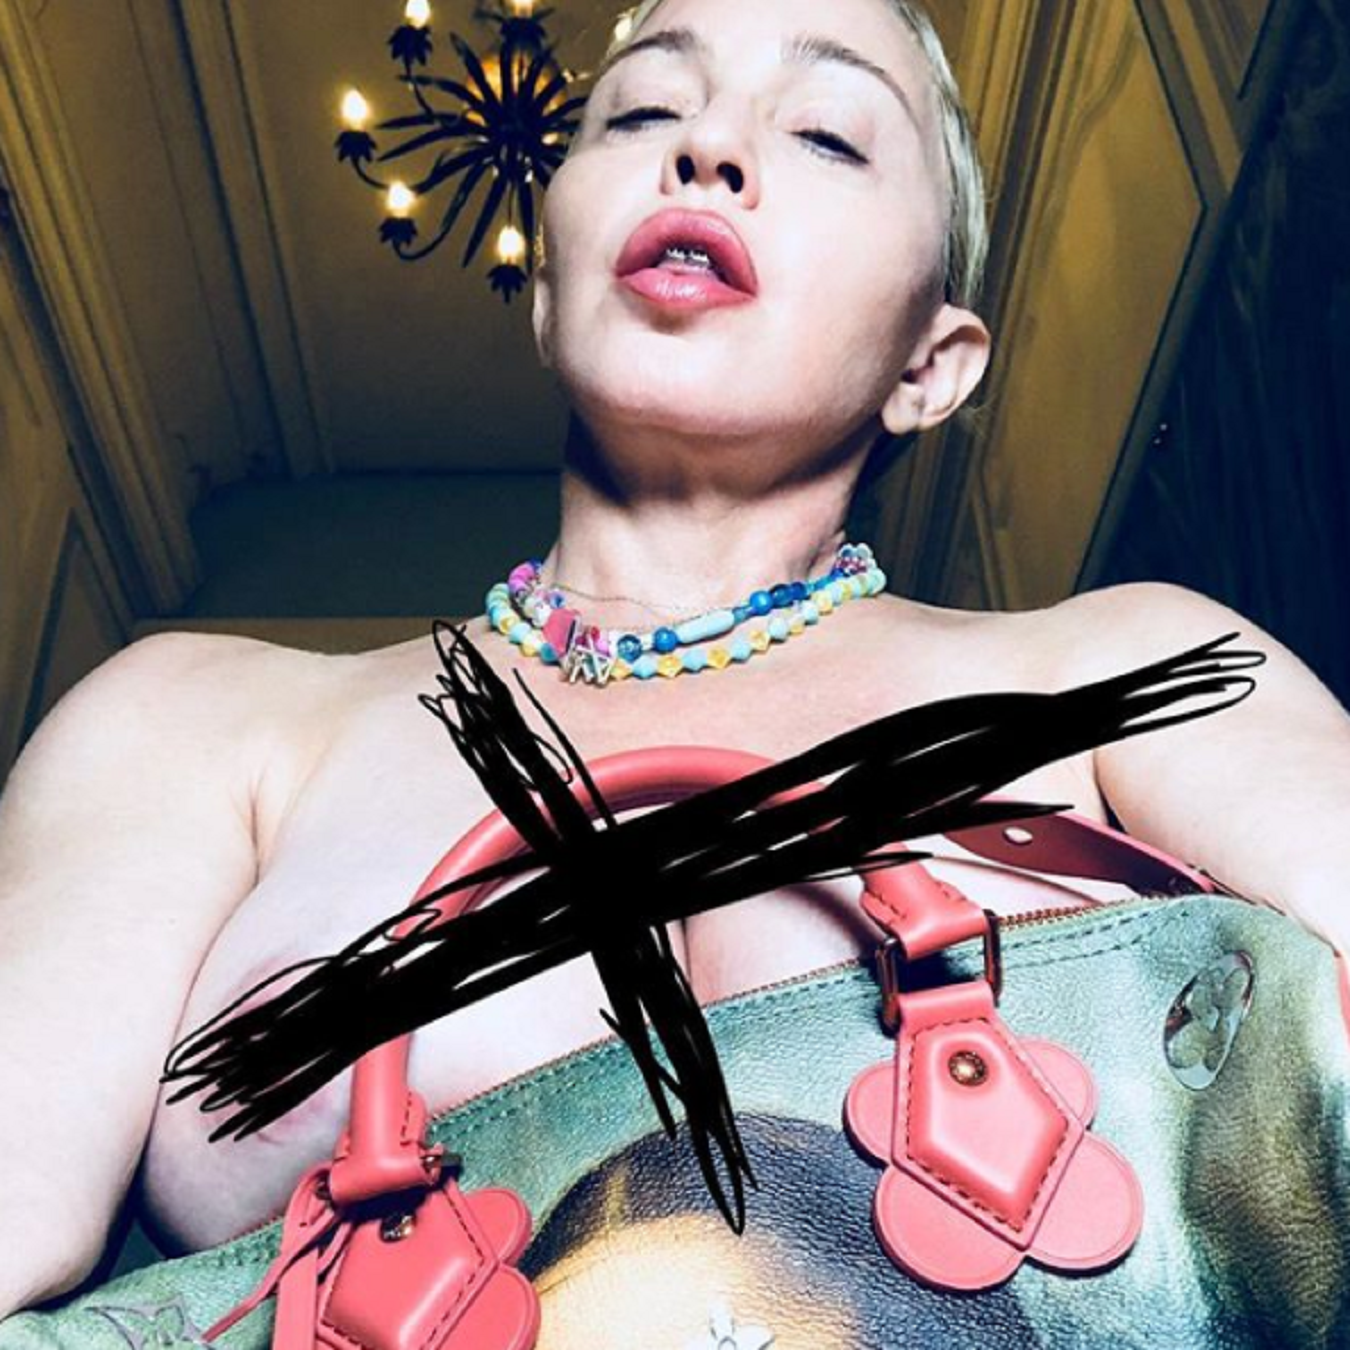 Què li passa a Madonna en la seva última imatge?